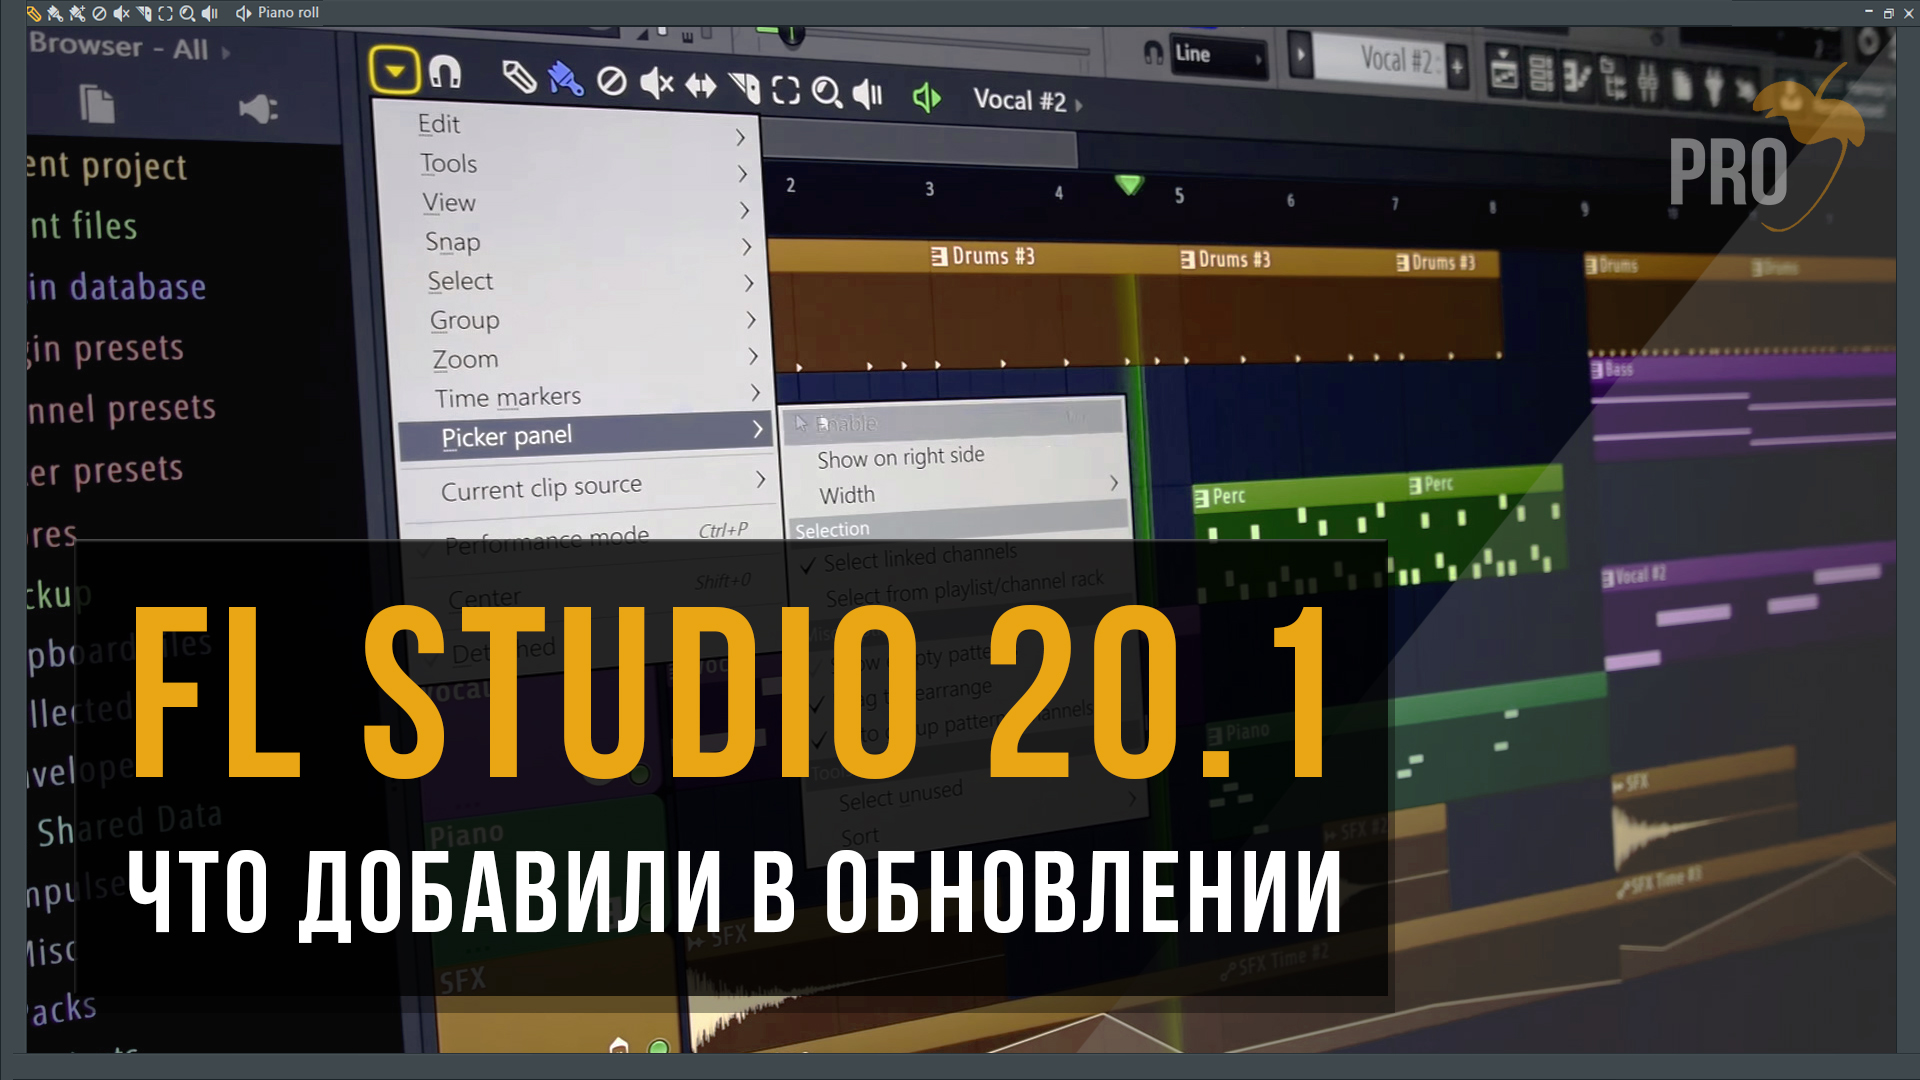 Что такого добавили в обновление FL Studio 20.1?